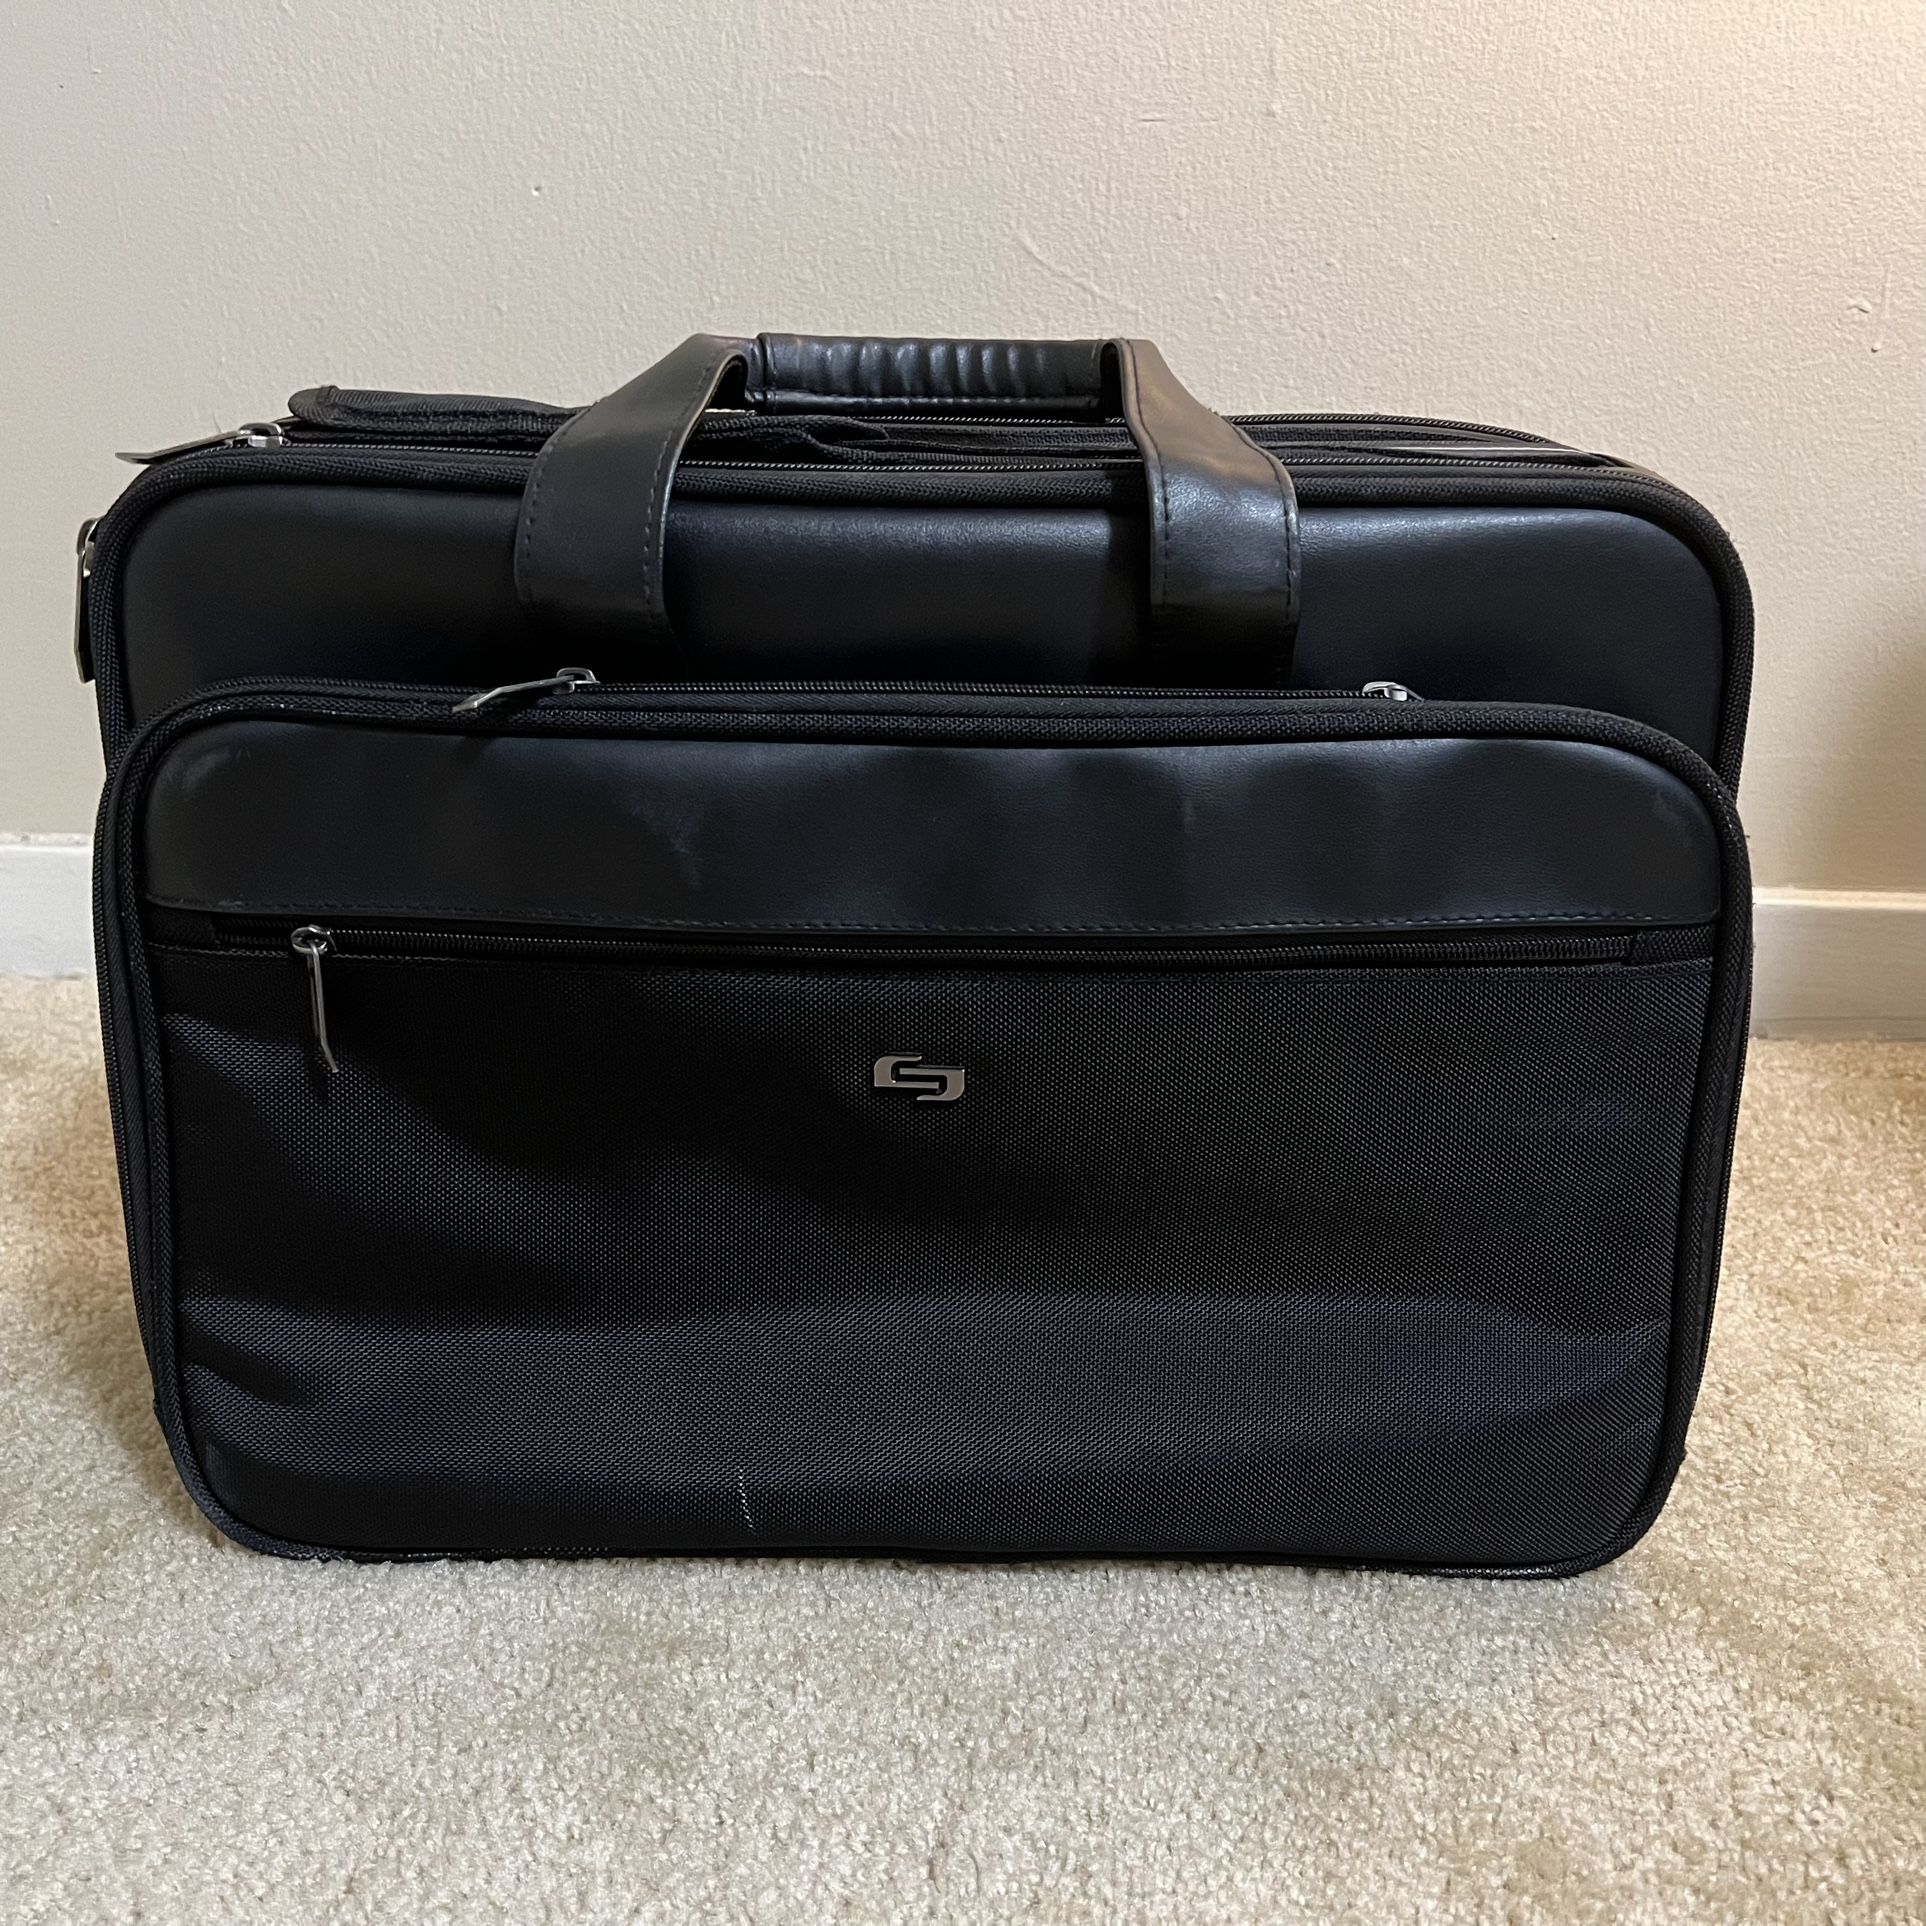 Solo Laptop Bag, Laptop Briefcase Business Office Bag for Men (17”x13”x6”)